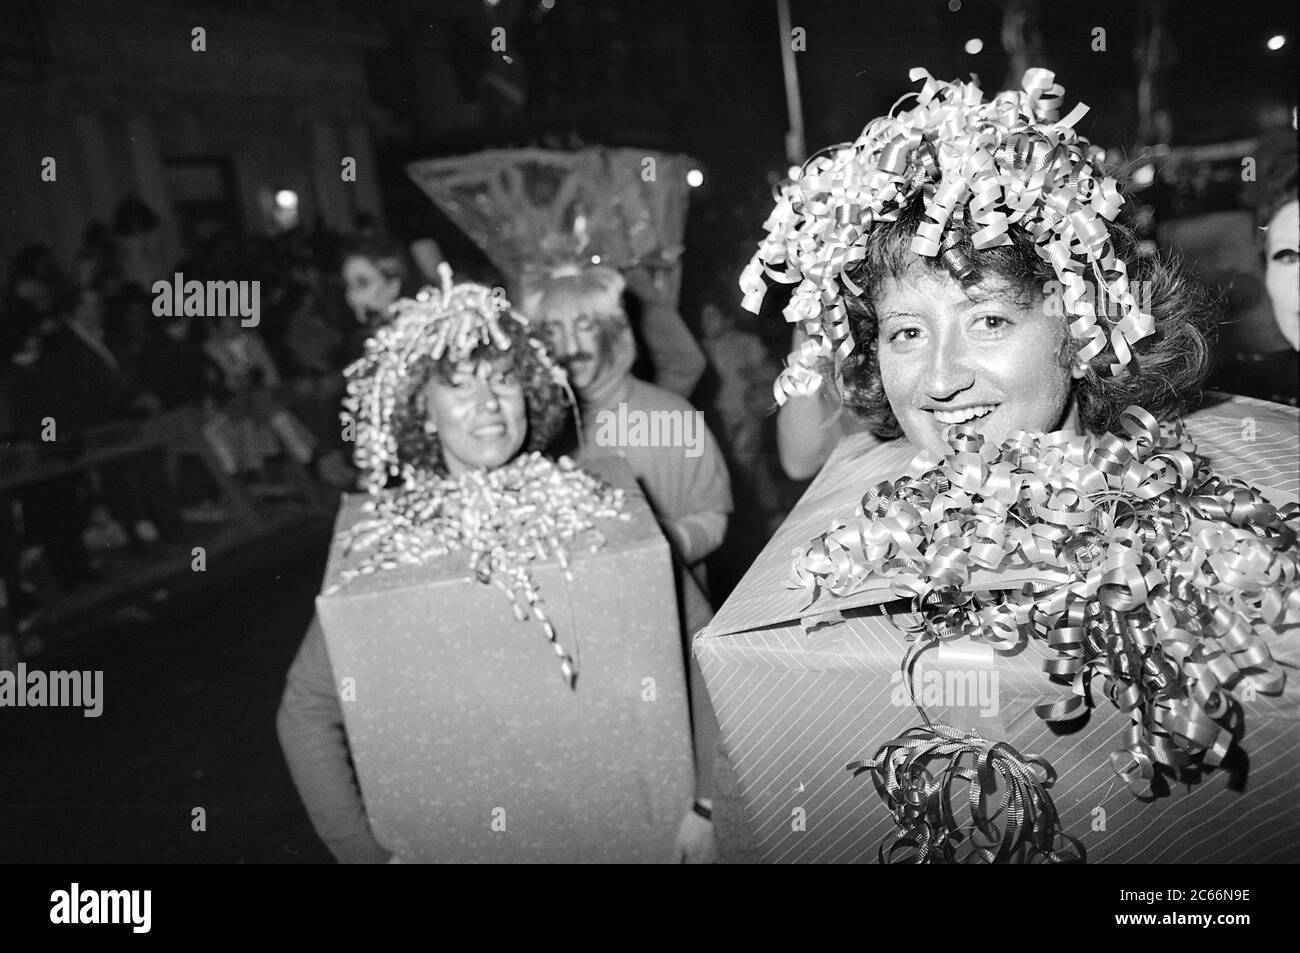 Costumi da regalo alla Greenwich Village Halloween Parade, New York City, USA negli anni '80 fotografati con film in bianco e nero di notte. Foto Stock